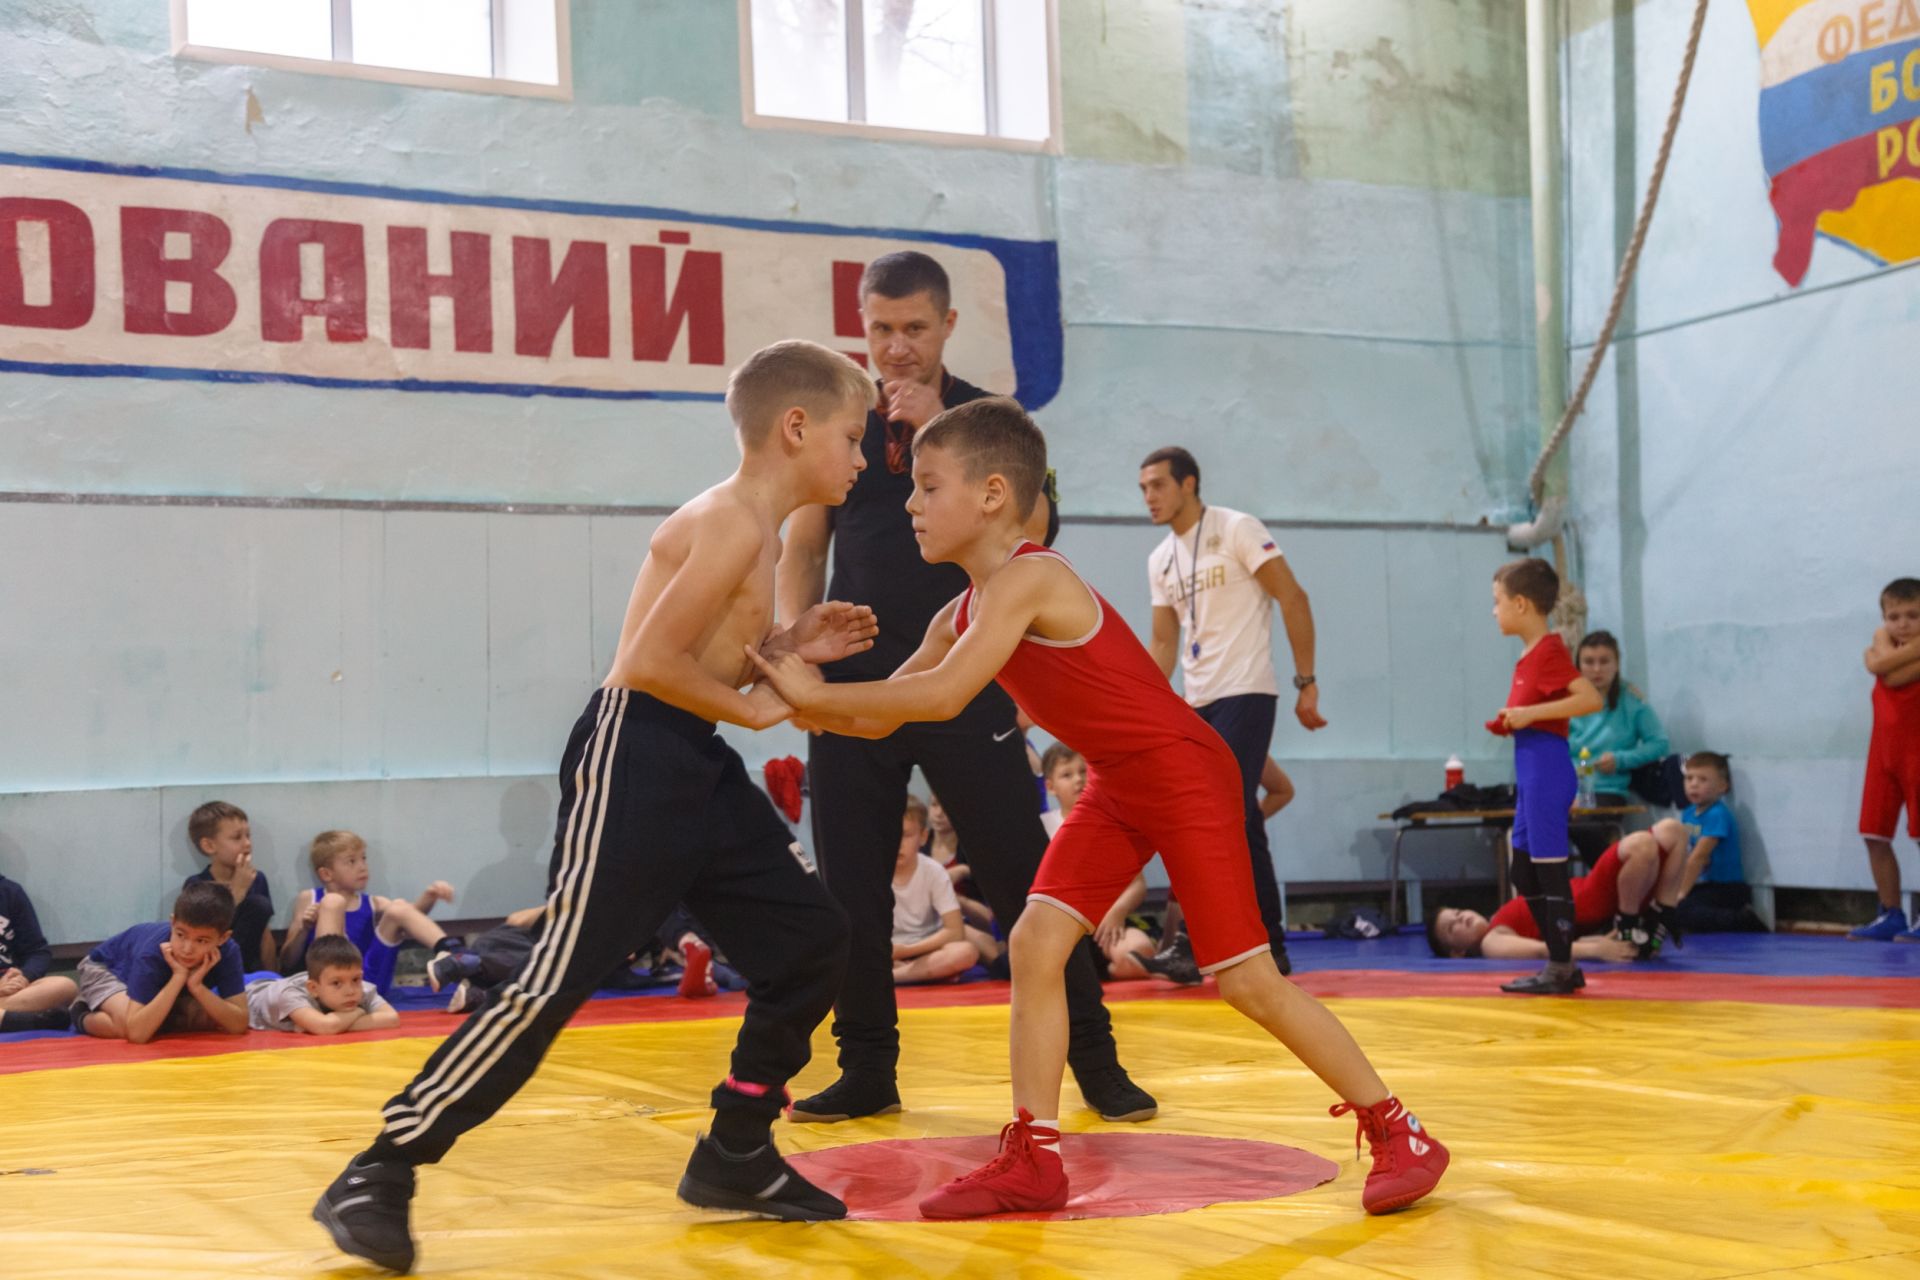 Около 400 юниоров со всей России участвуют в турнире по греко-римской борьбе в Казани